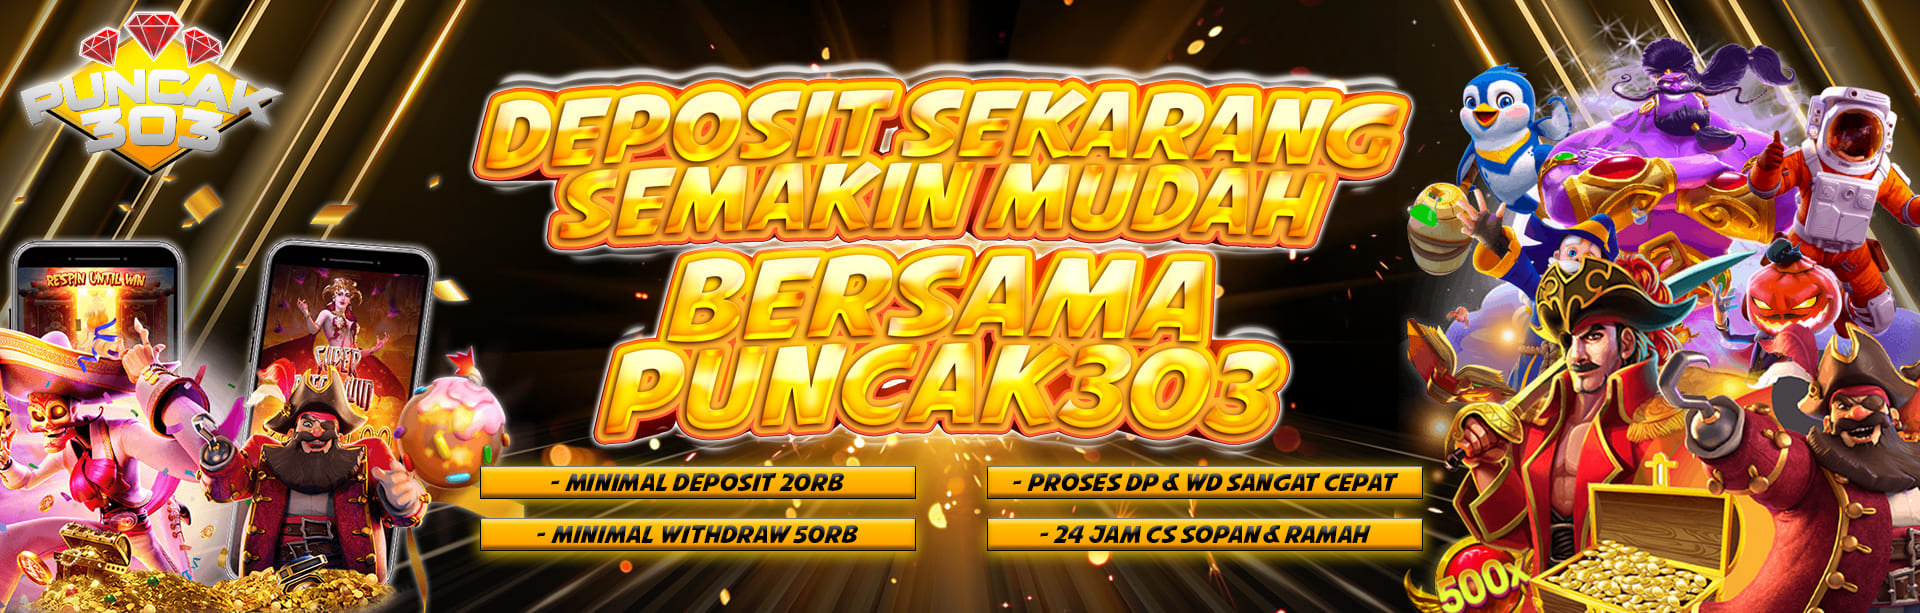 DEPOSIT SEKARANG SEMAKIN MUDAH BERSAMA PUNCAK303